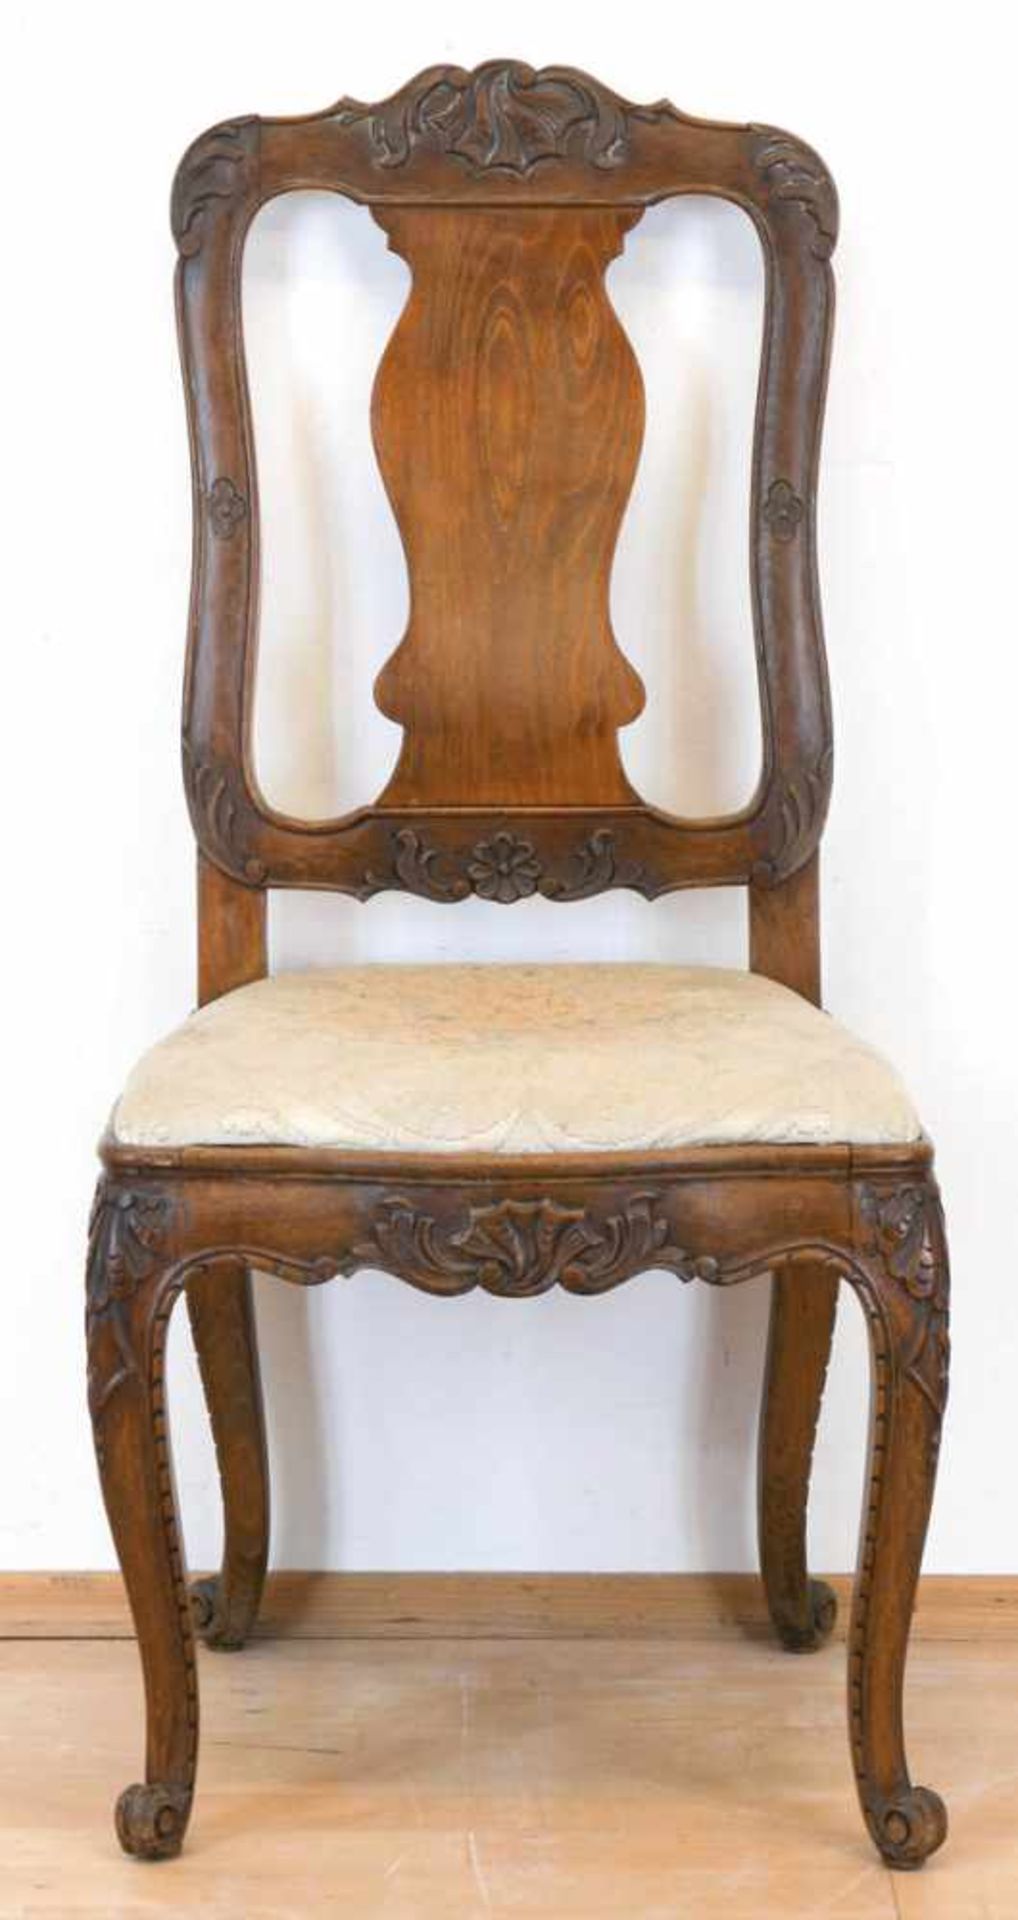 Barock-Stuhl, Nußbaum, beschnitzt, gepolsterter Sitz mit hellem Stoffbezug, Rückenlehnemit